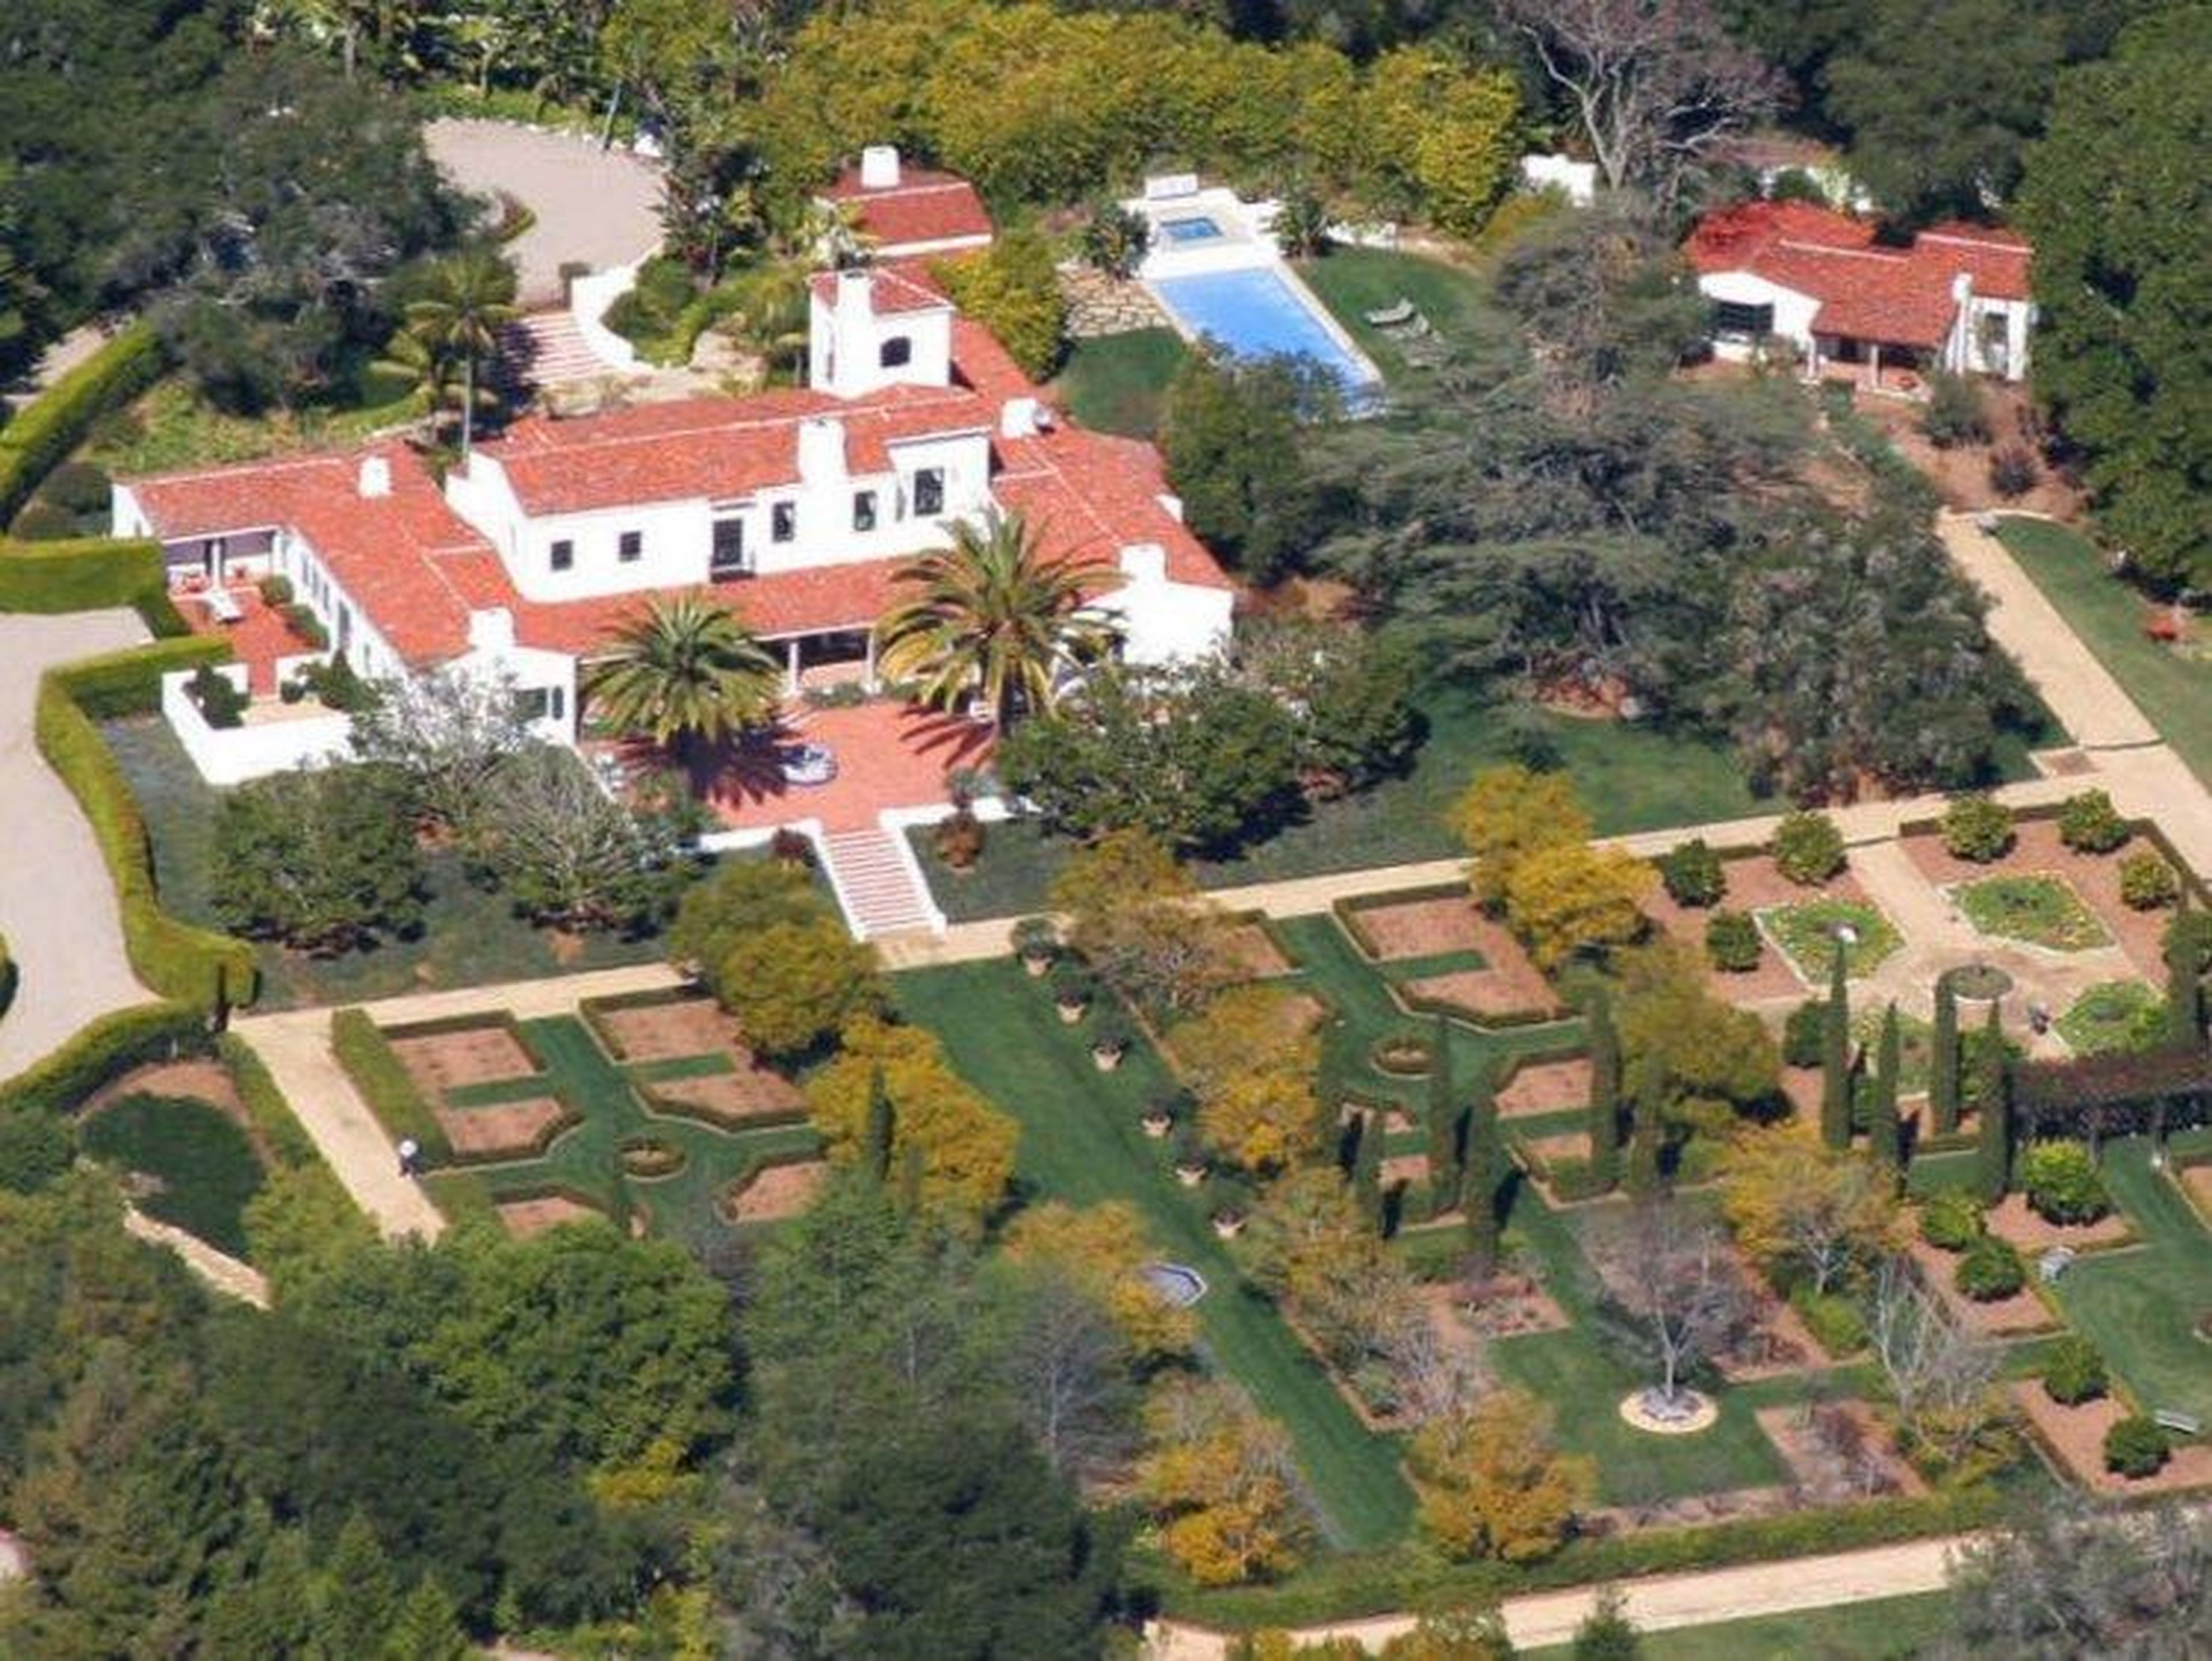 [RE] El ex director ejecutivo de Google, Eric Schmidt, compró su casa de 650 metros cuadrados en Montecito, California, a Ellen DeGeneres y Portia de Rossi en 2007 por 20 millones de dólares.